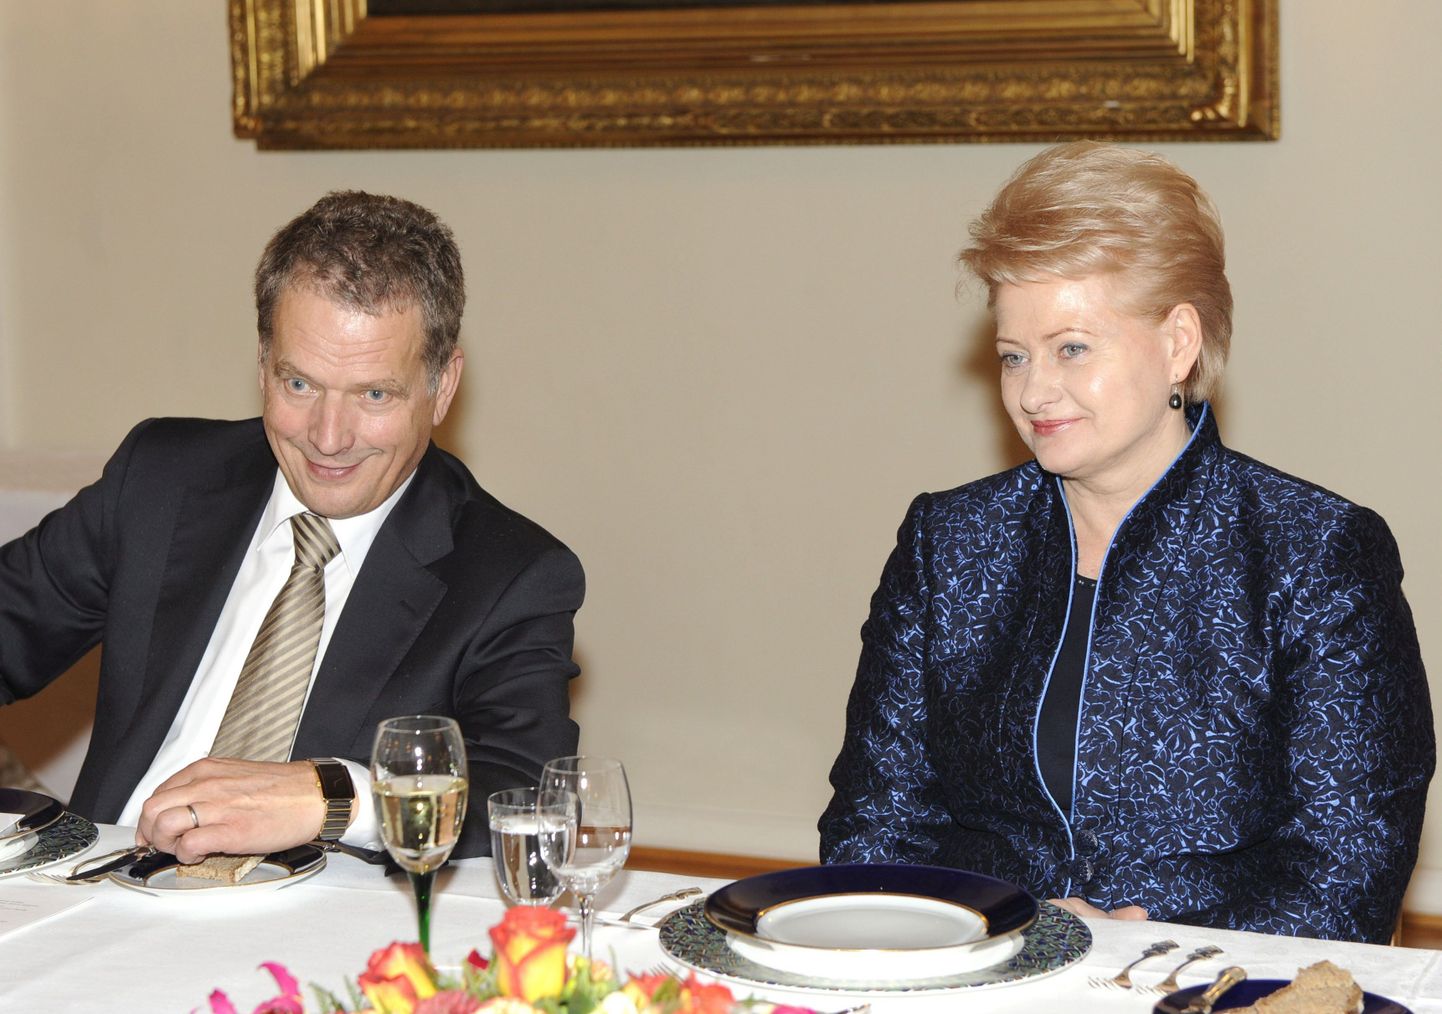 Soome parlamendi esimees Sauli Niinistö koos Leedu presidendi Dalia Grybauskaitega.